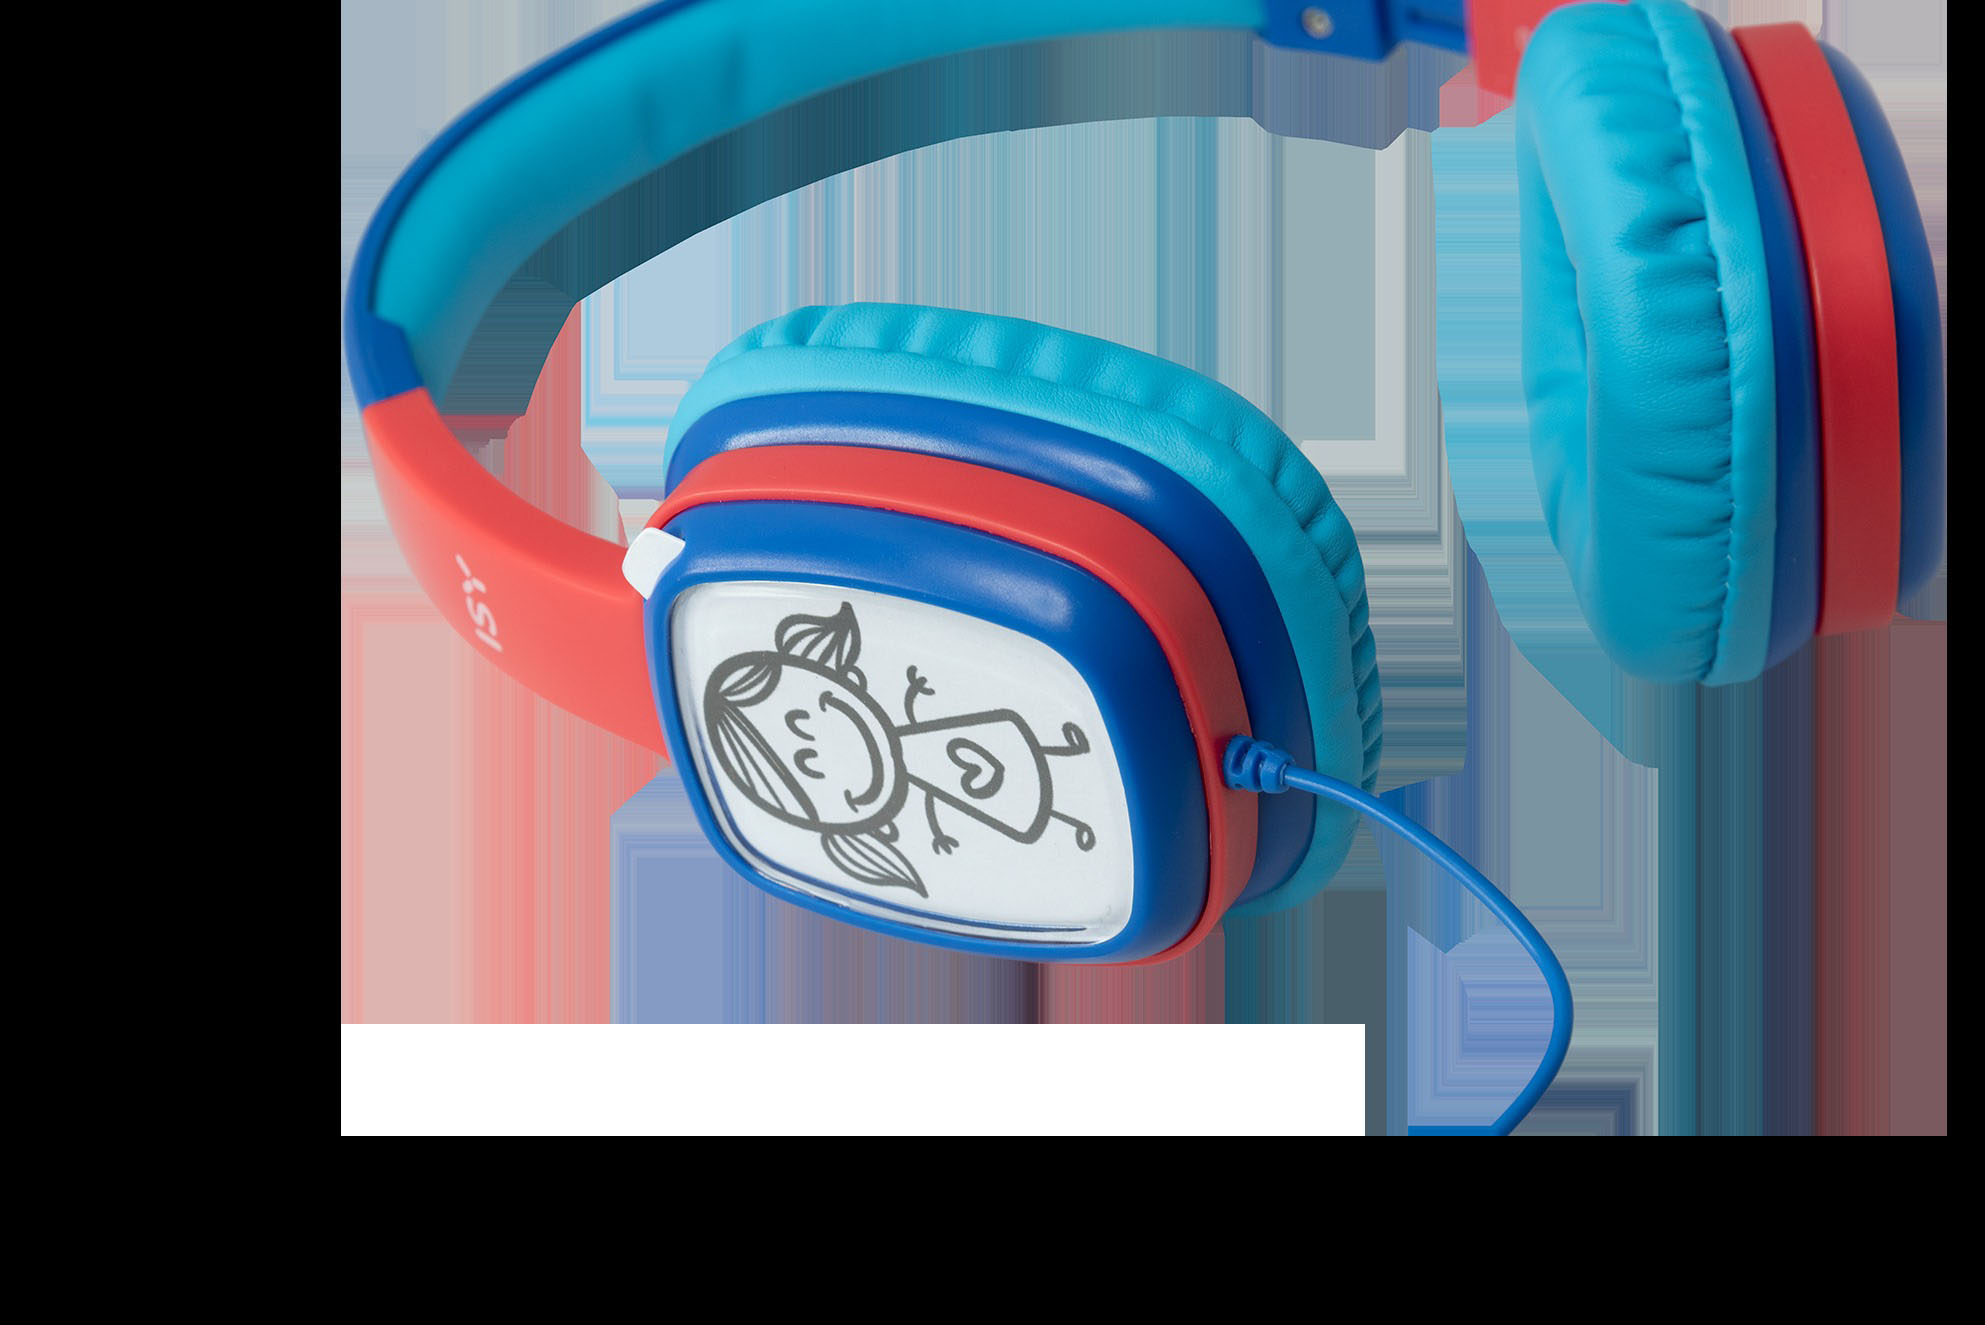 Blau On-ear Kopfhörer ISY IHP-1001-BL,